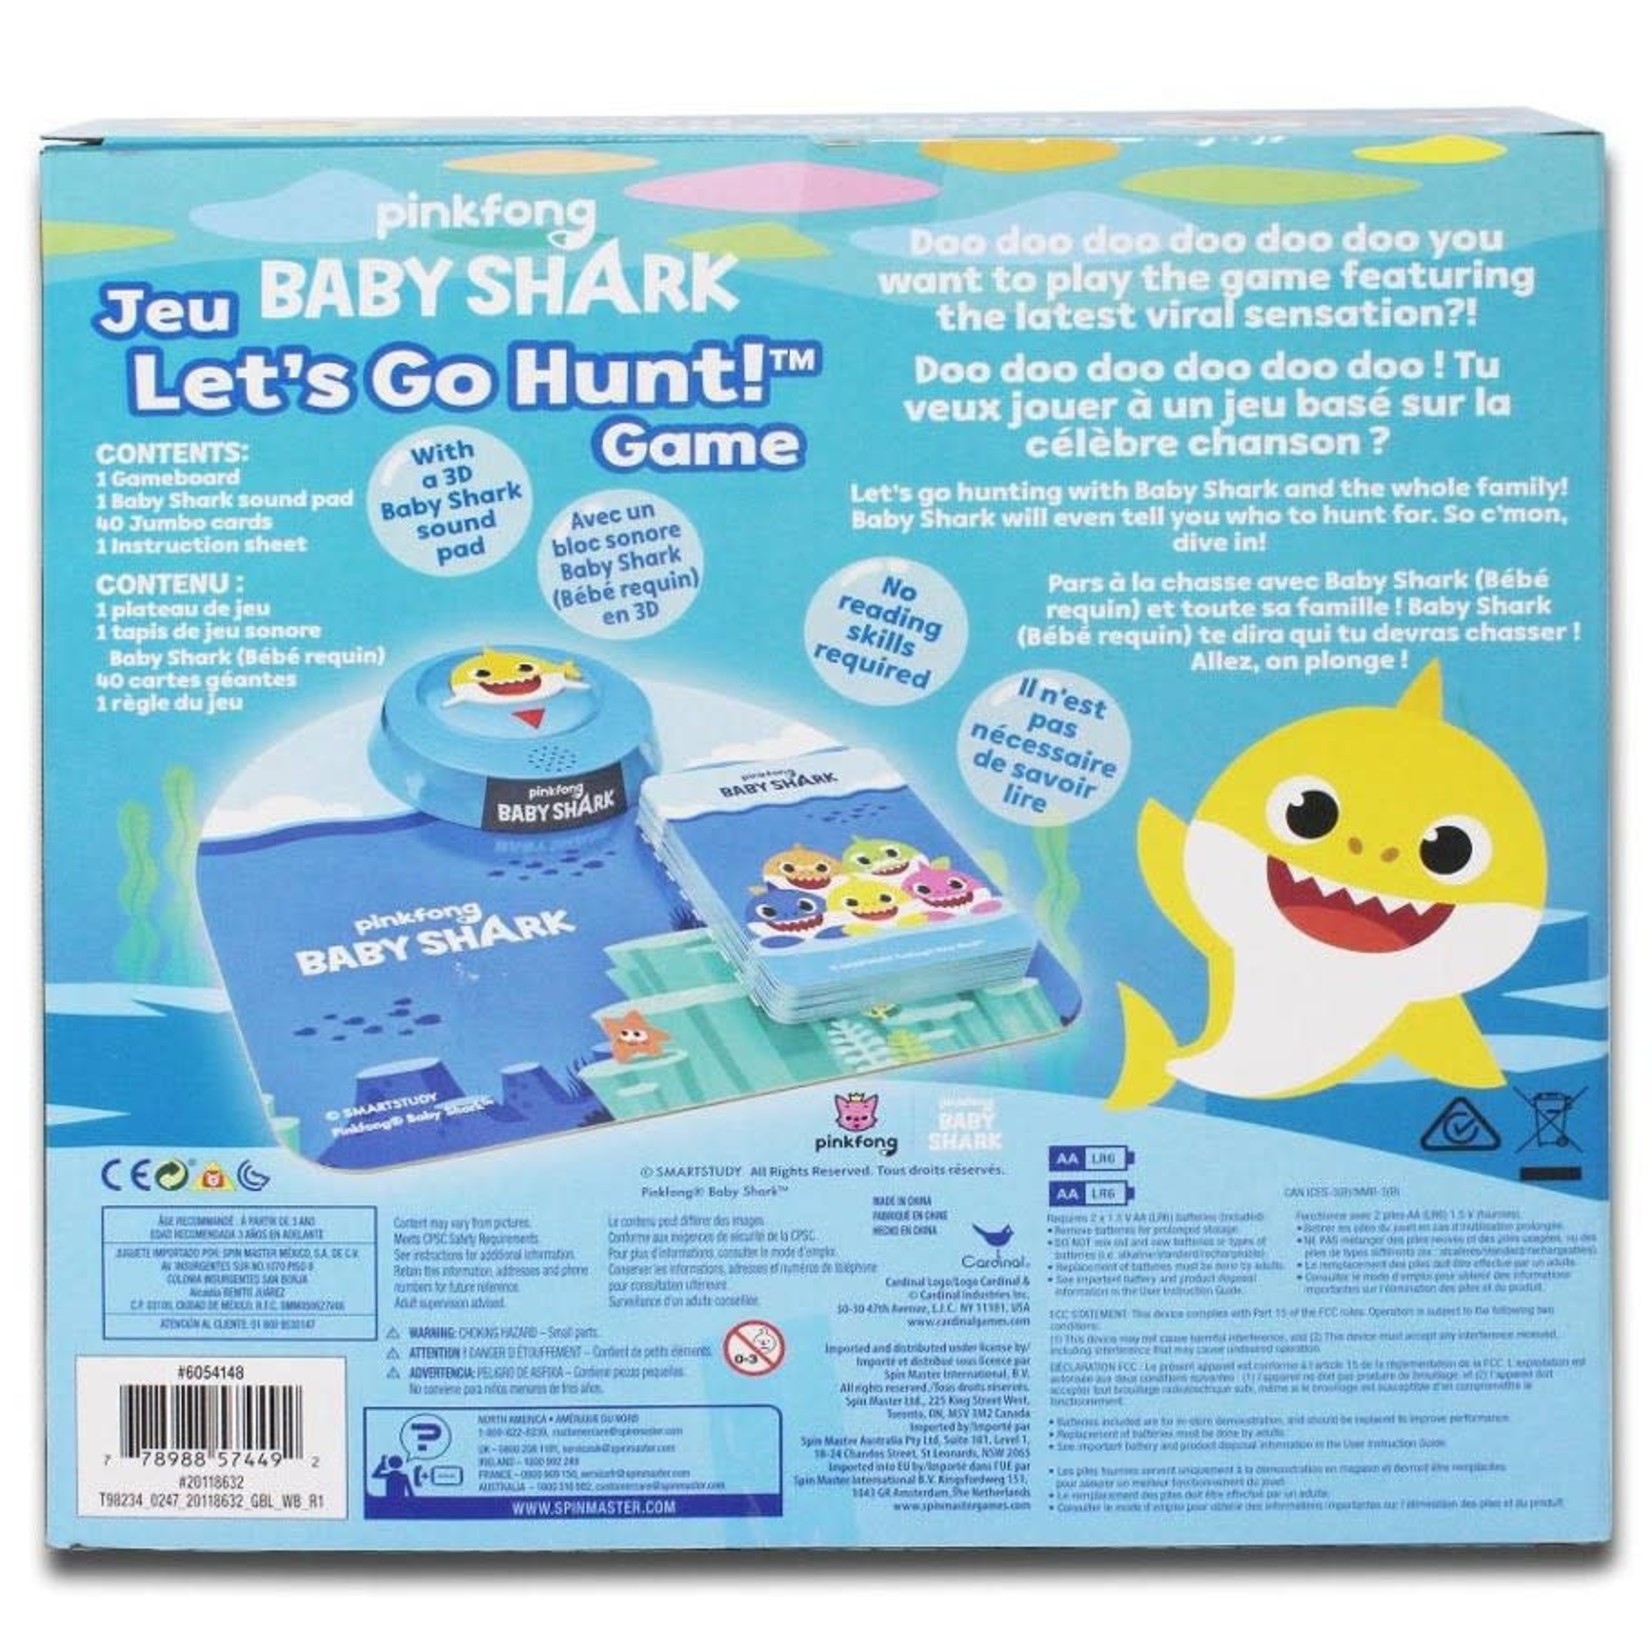 Baby Shark: Let's Go Hunt